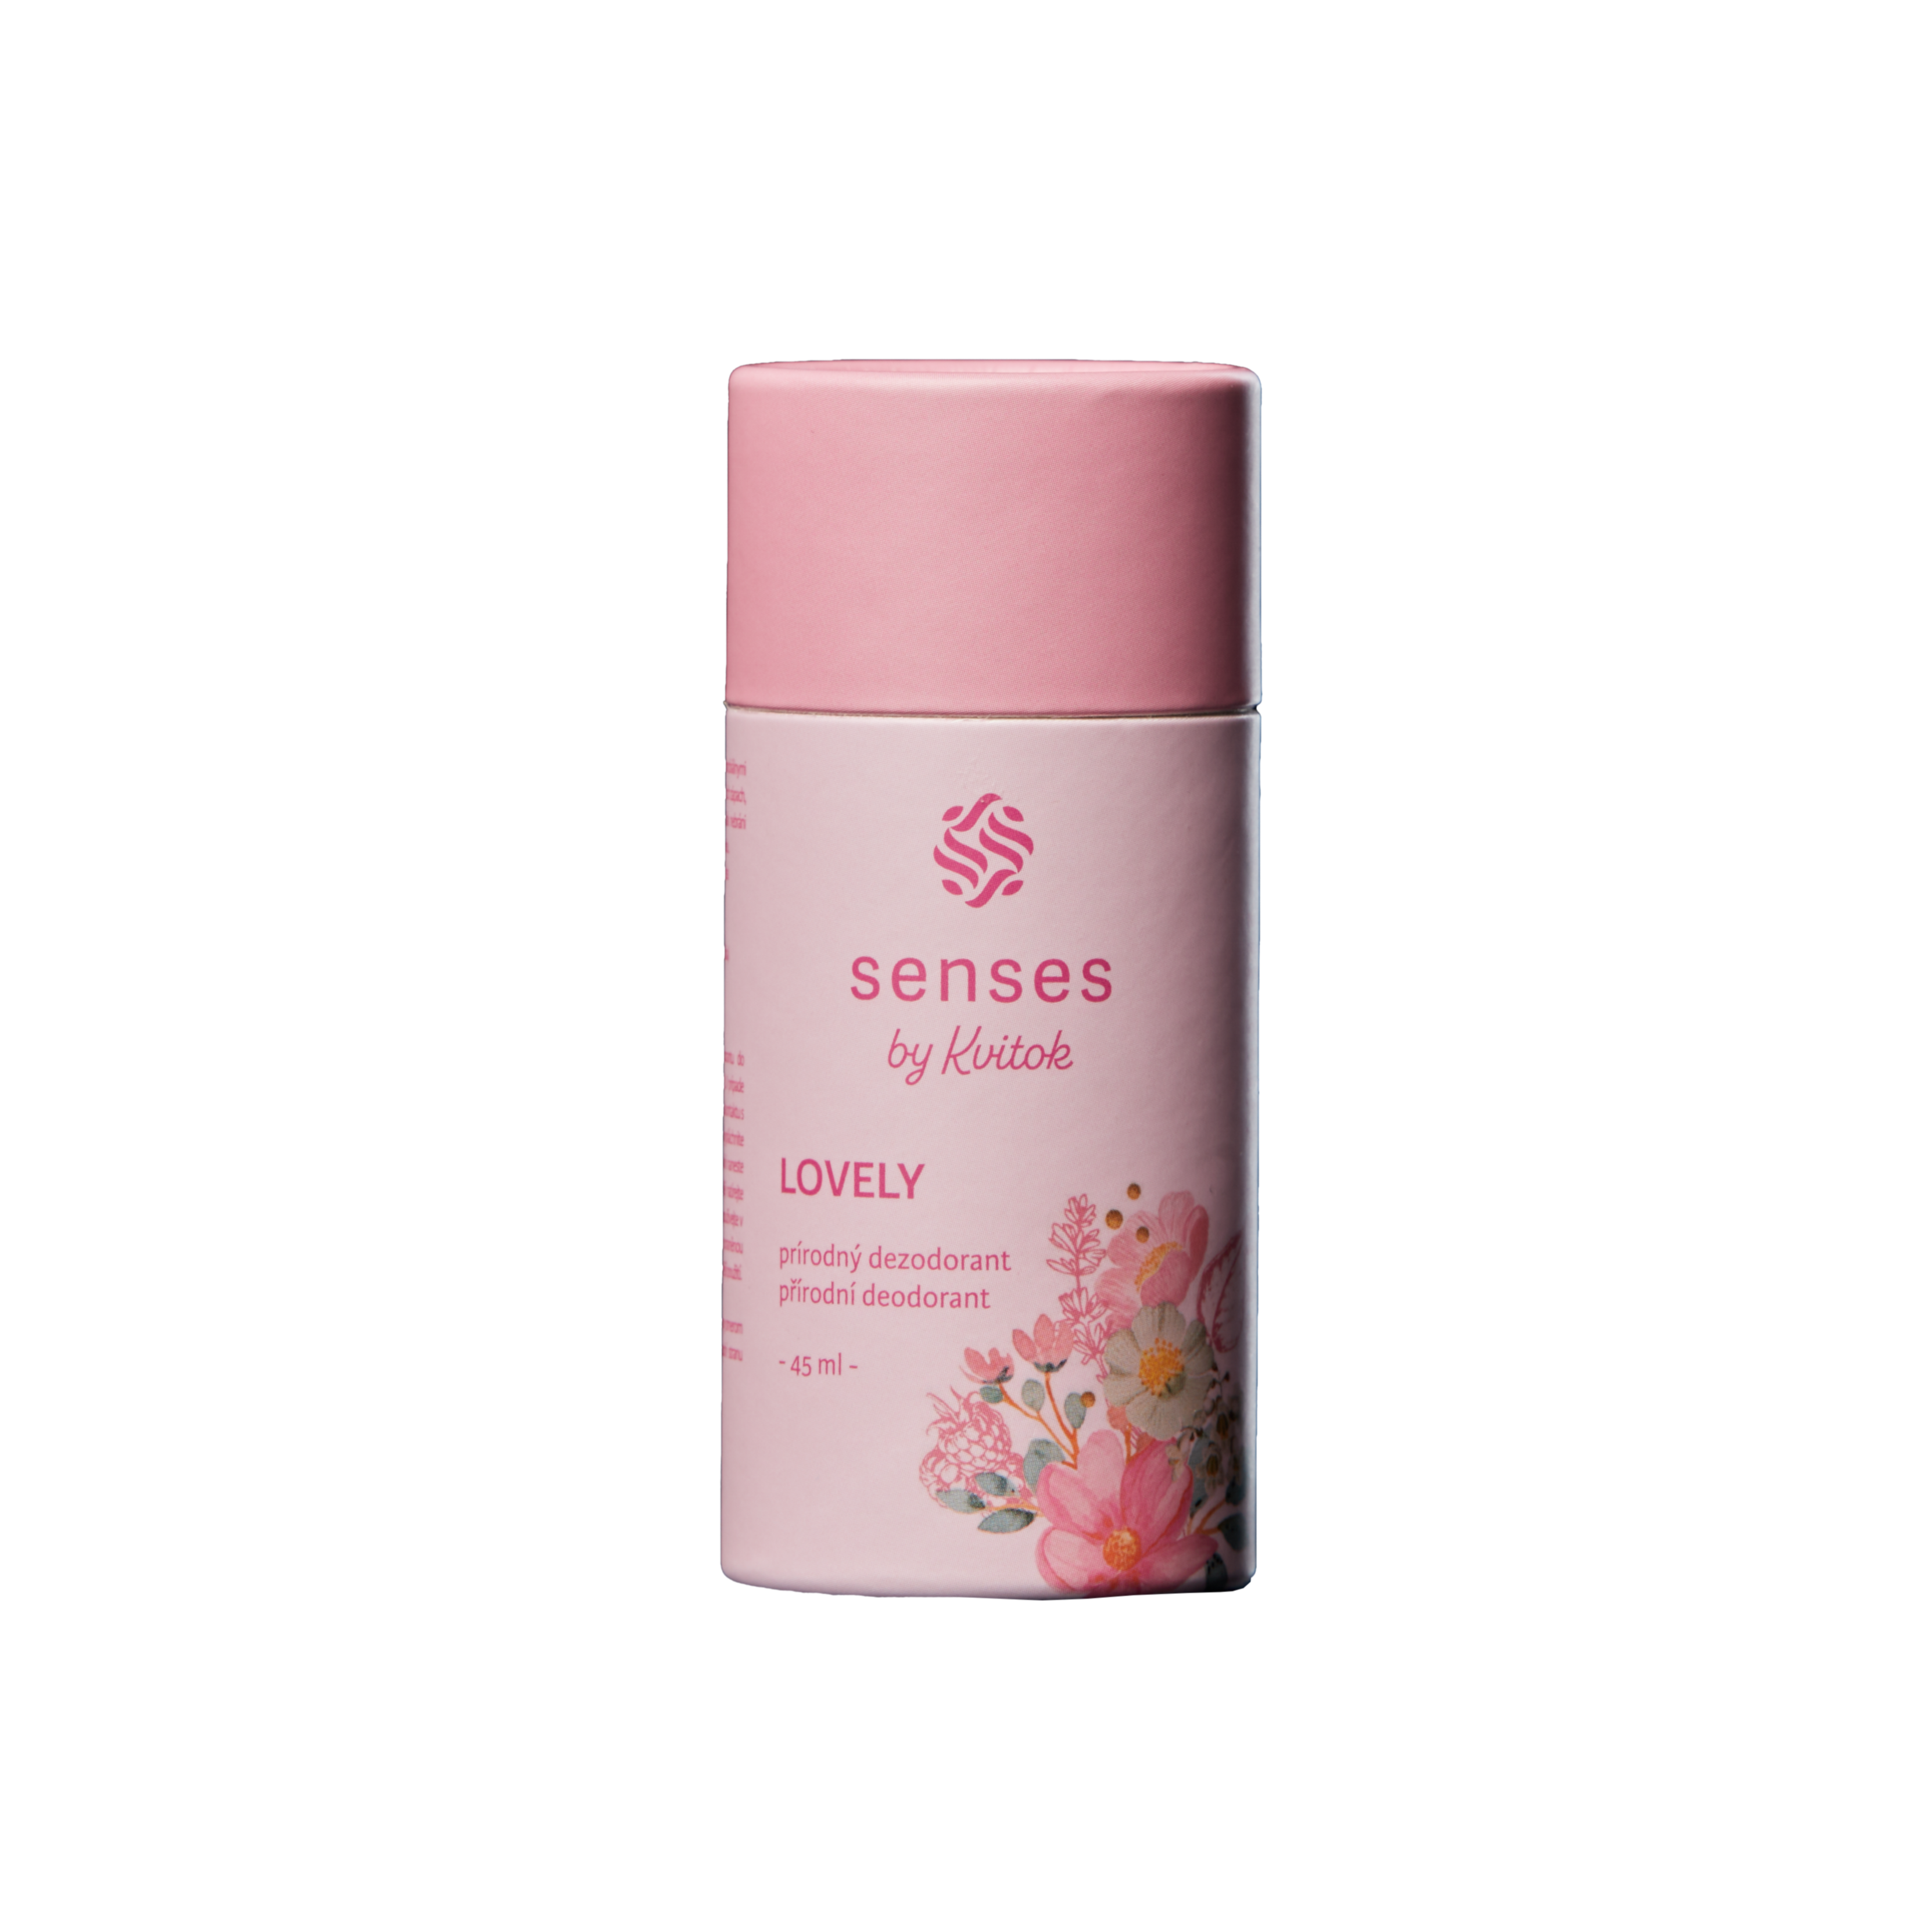 Kvitok Senses Tuhý deodorant Lovely (45 ml) - účinný až 24 hodin Kvitok